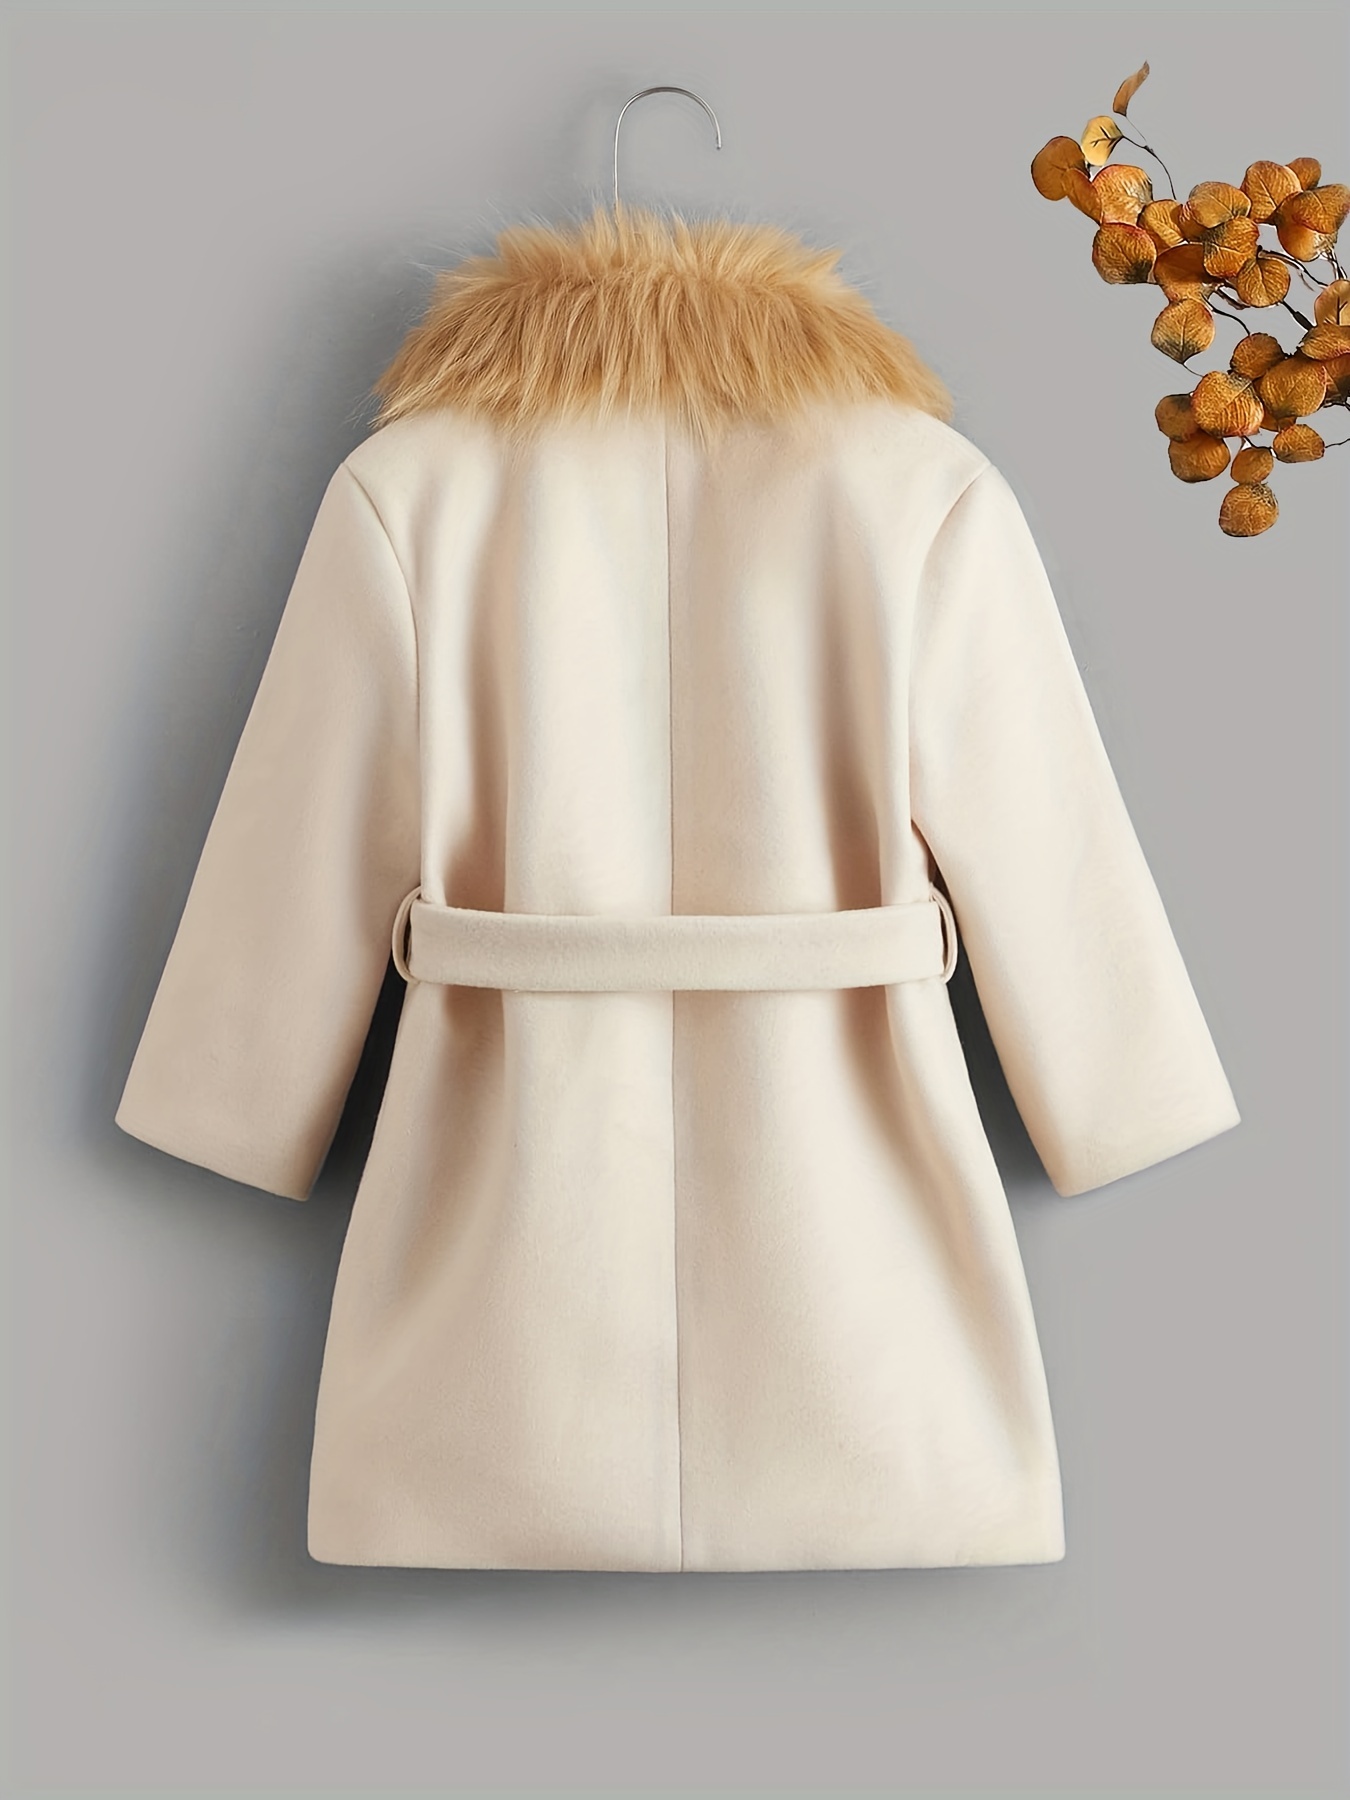 Manteau hiver long pour homme avec fourrure col 60% laine